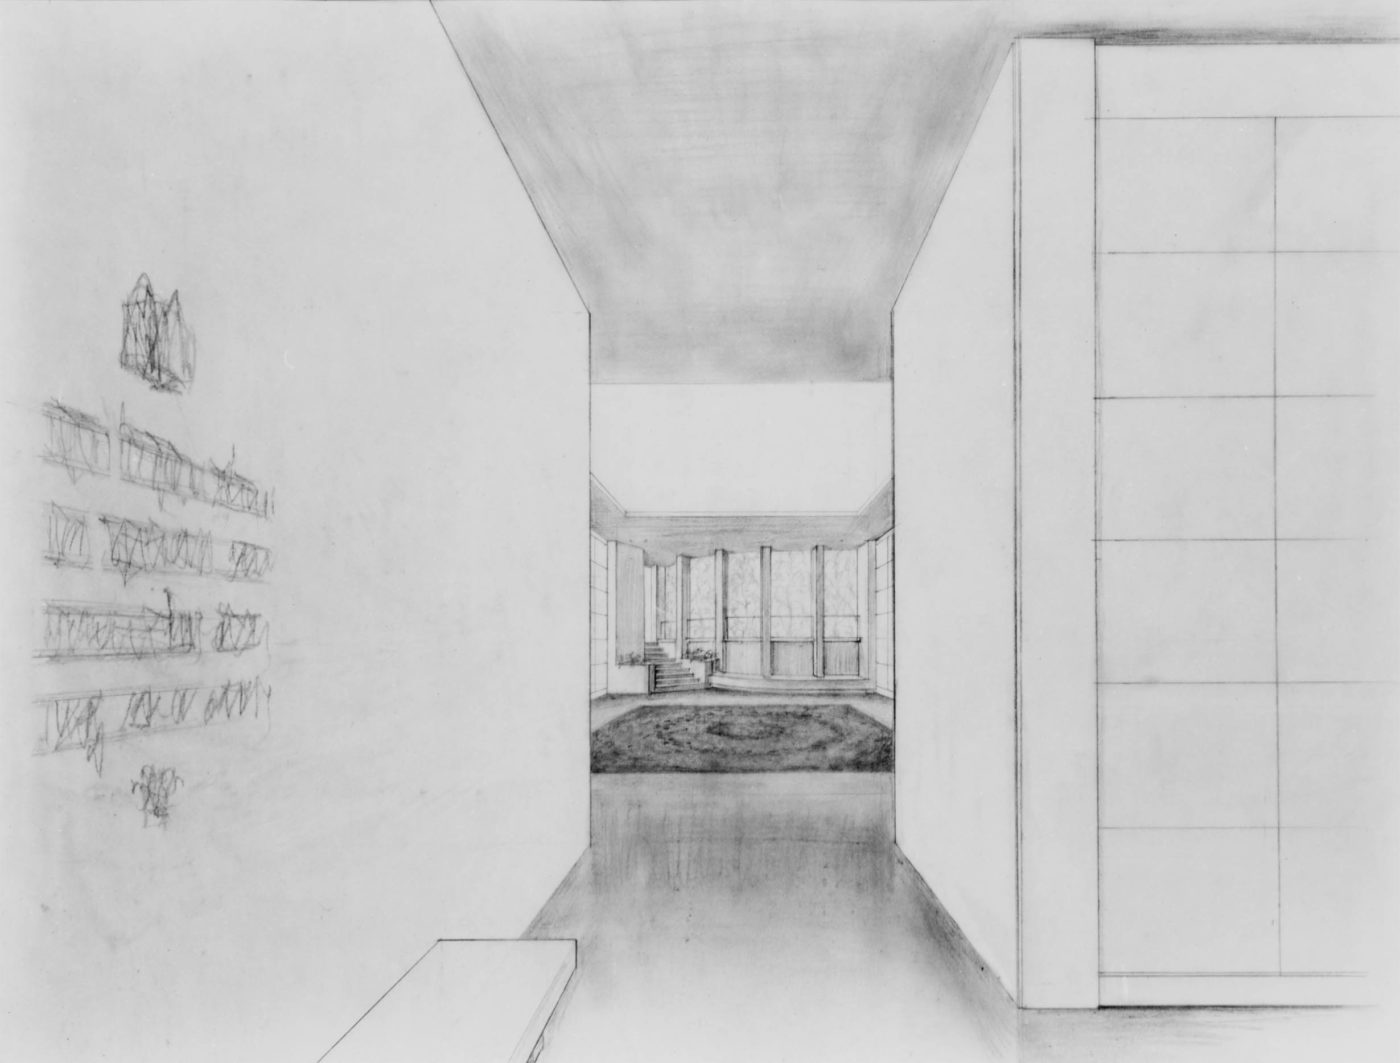 Sketch for interior of mausoleum complex